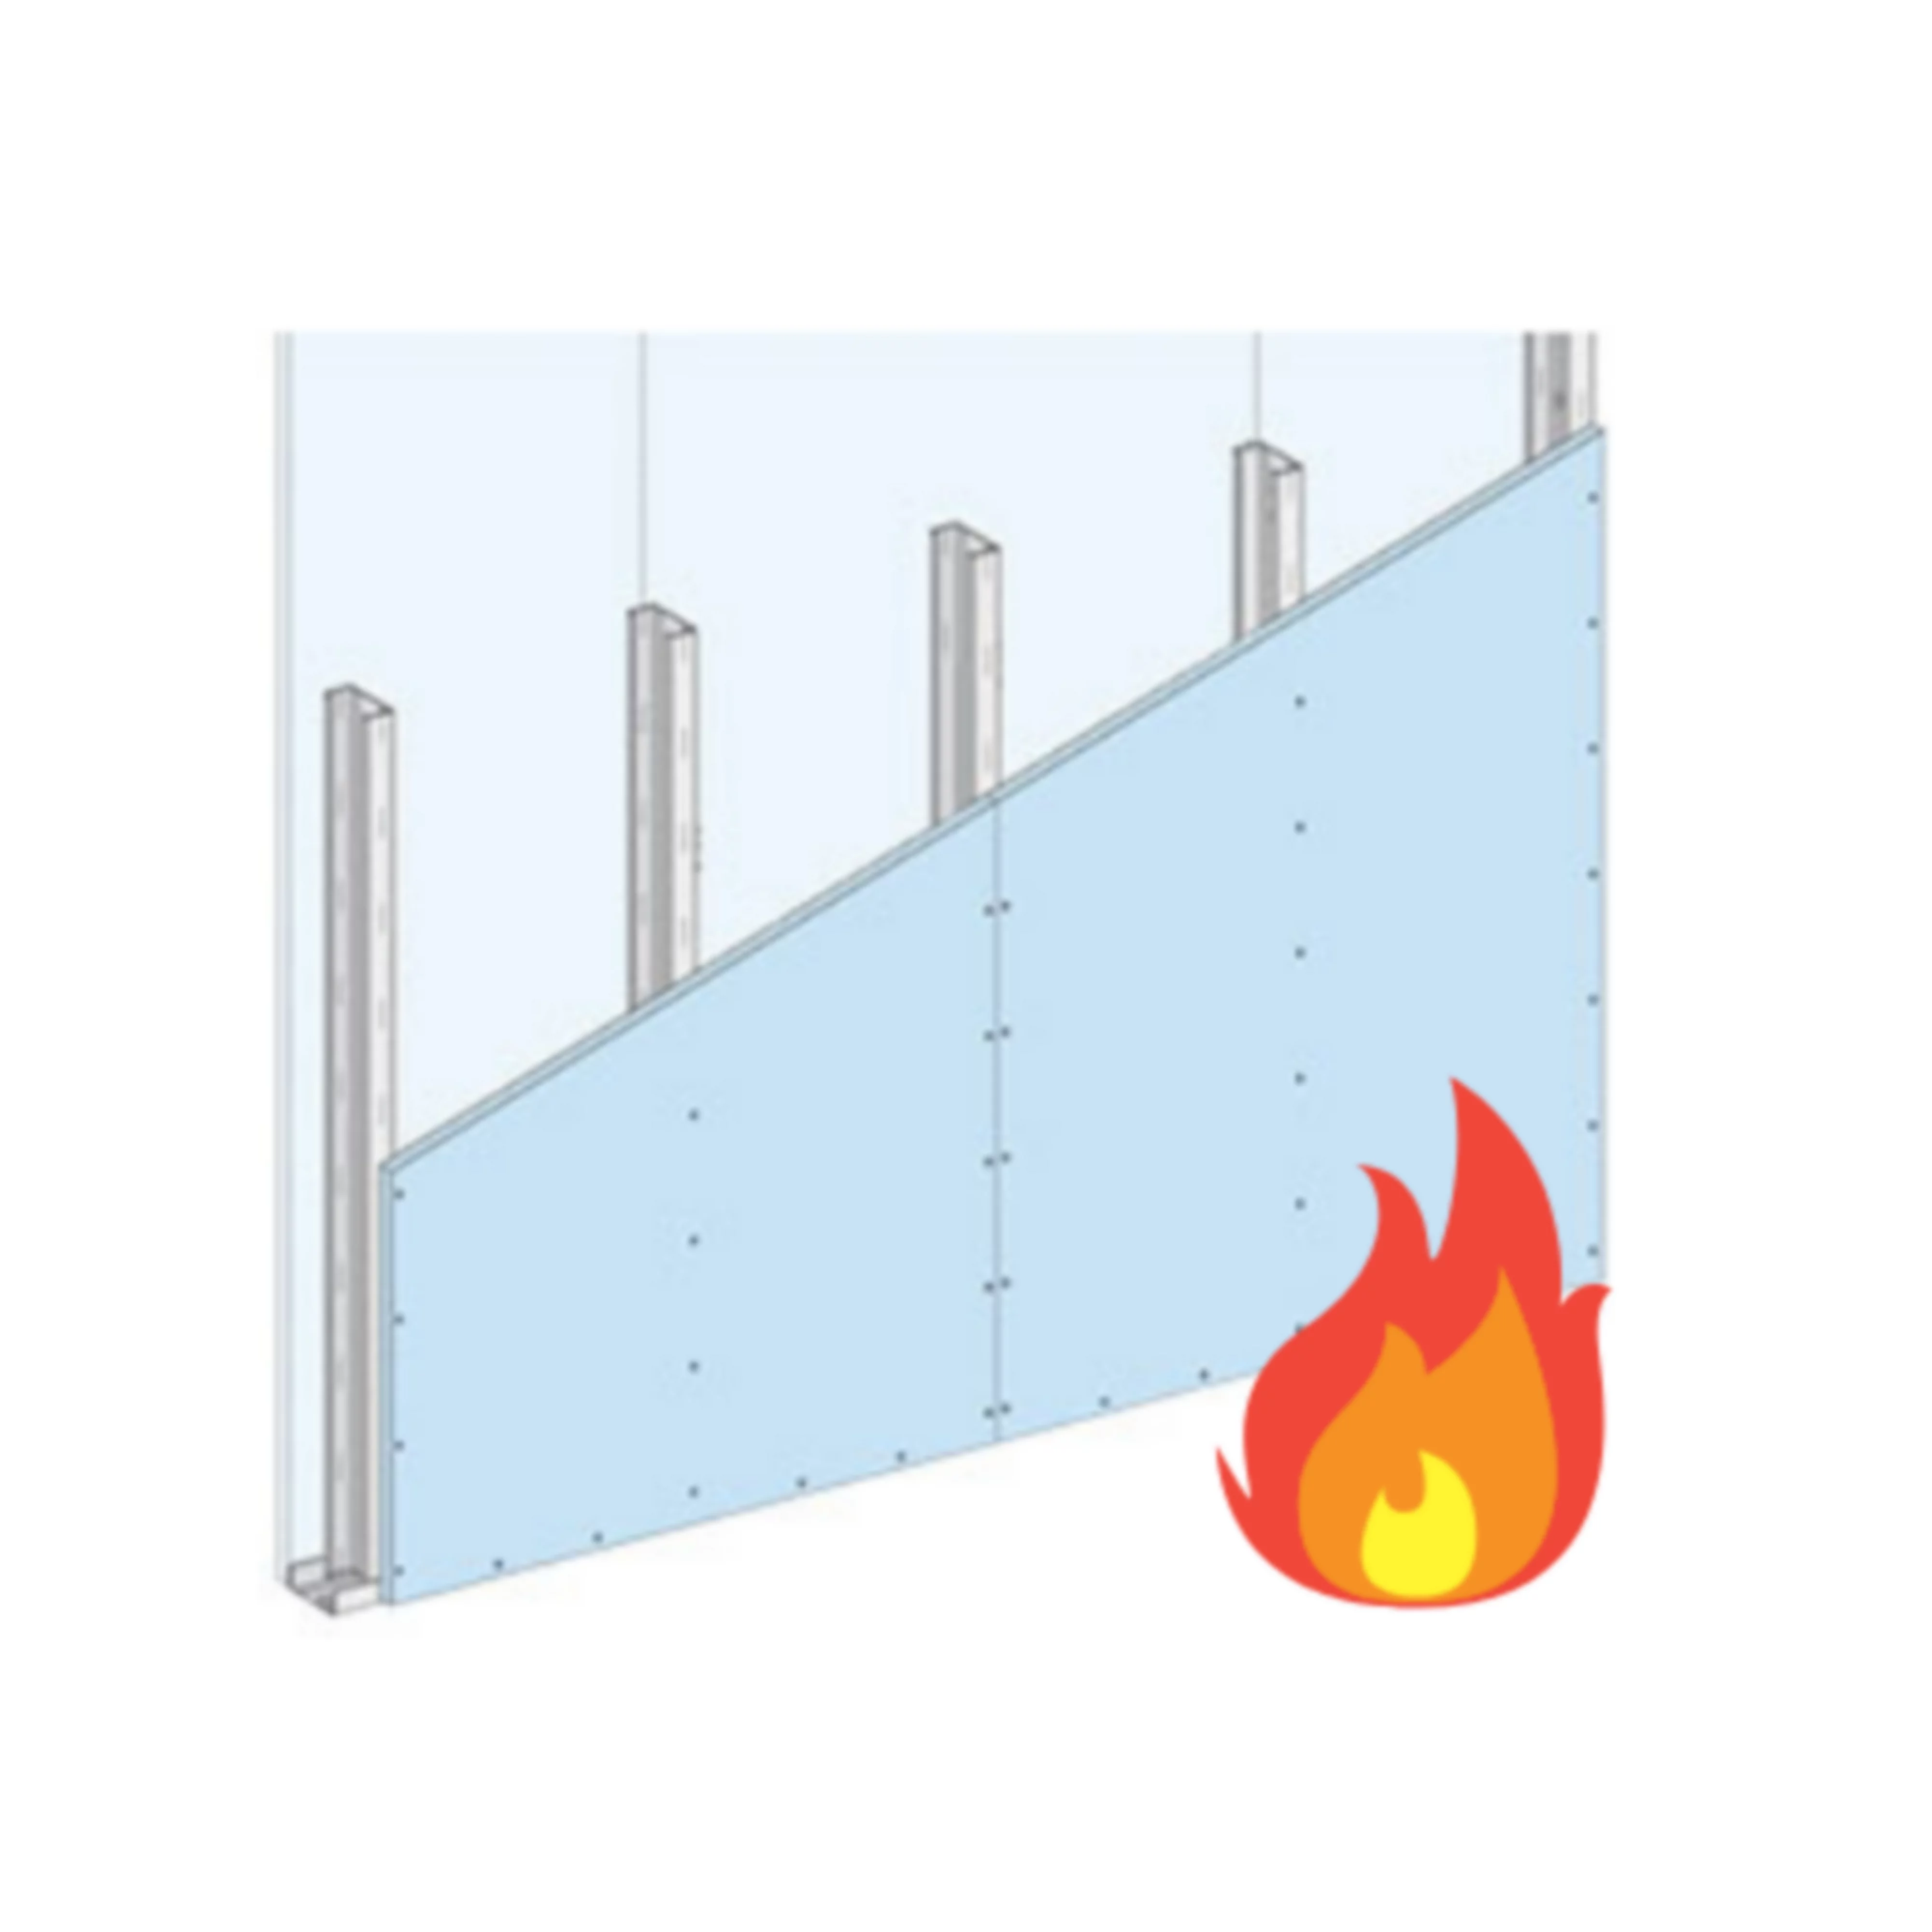 Mur, plafond & cloison coupe feu: sécurité incendie – guide - Knauf